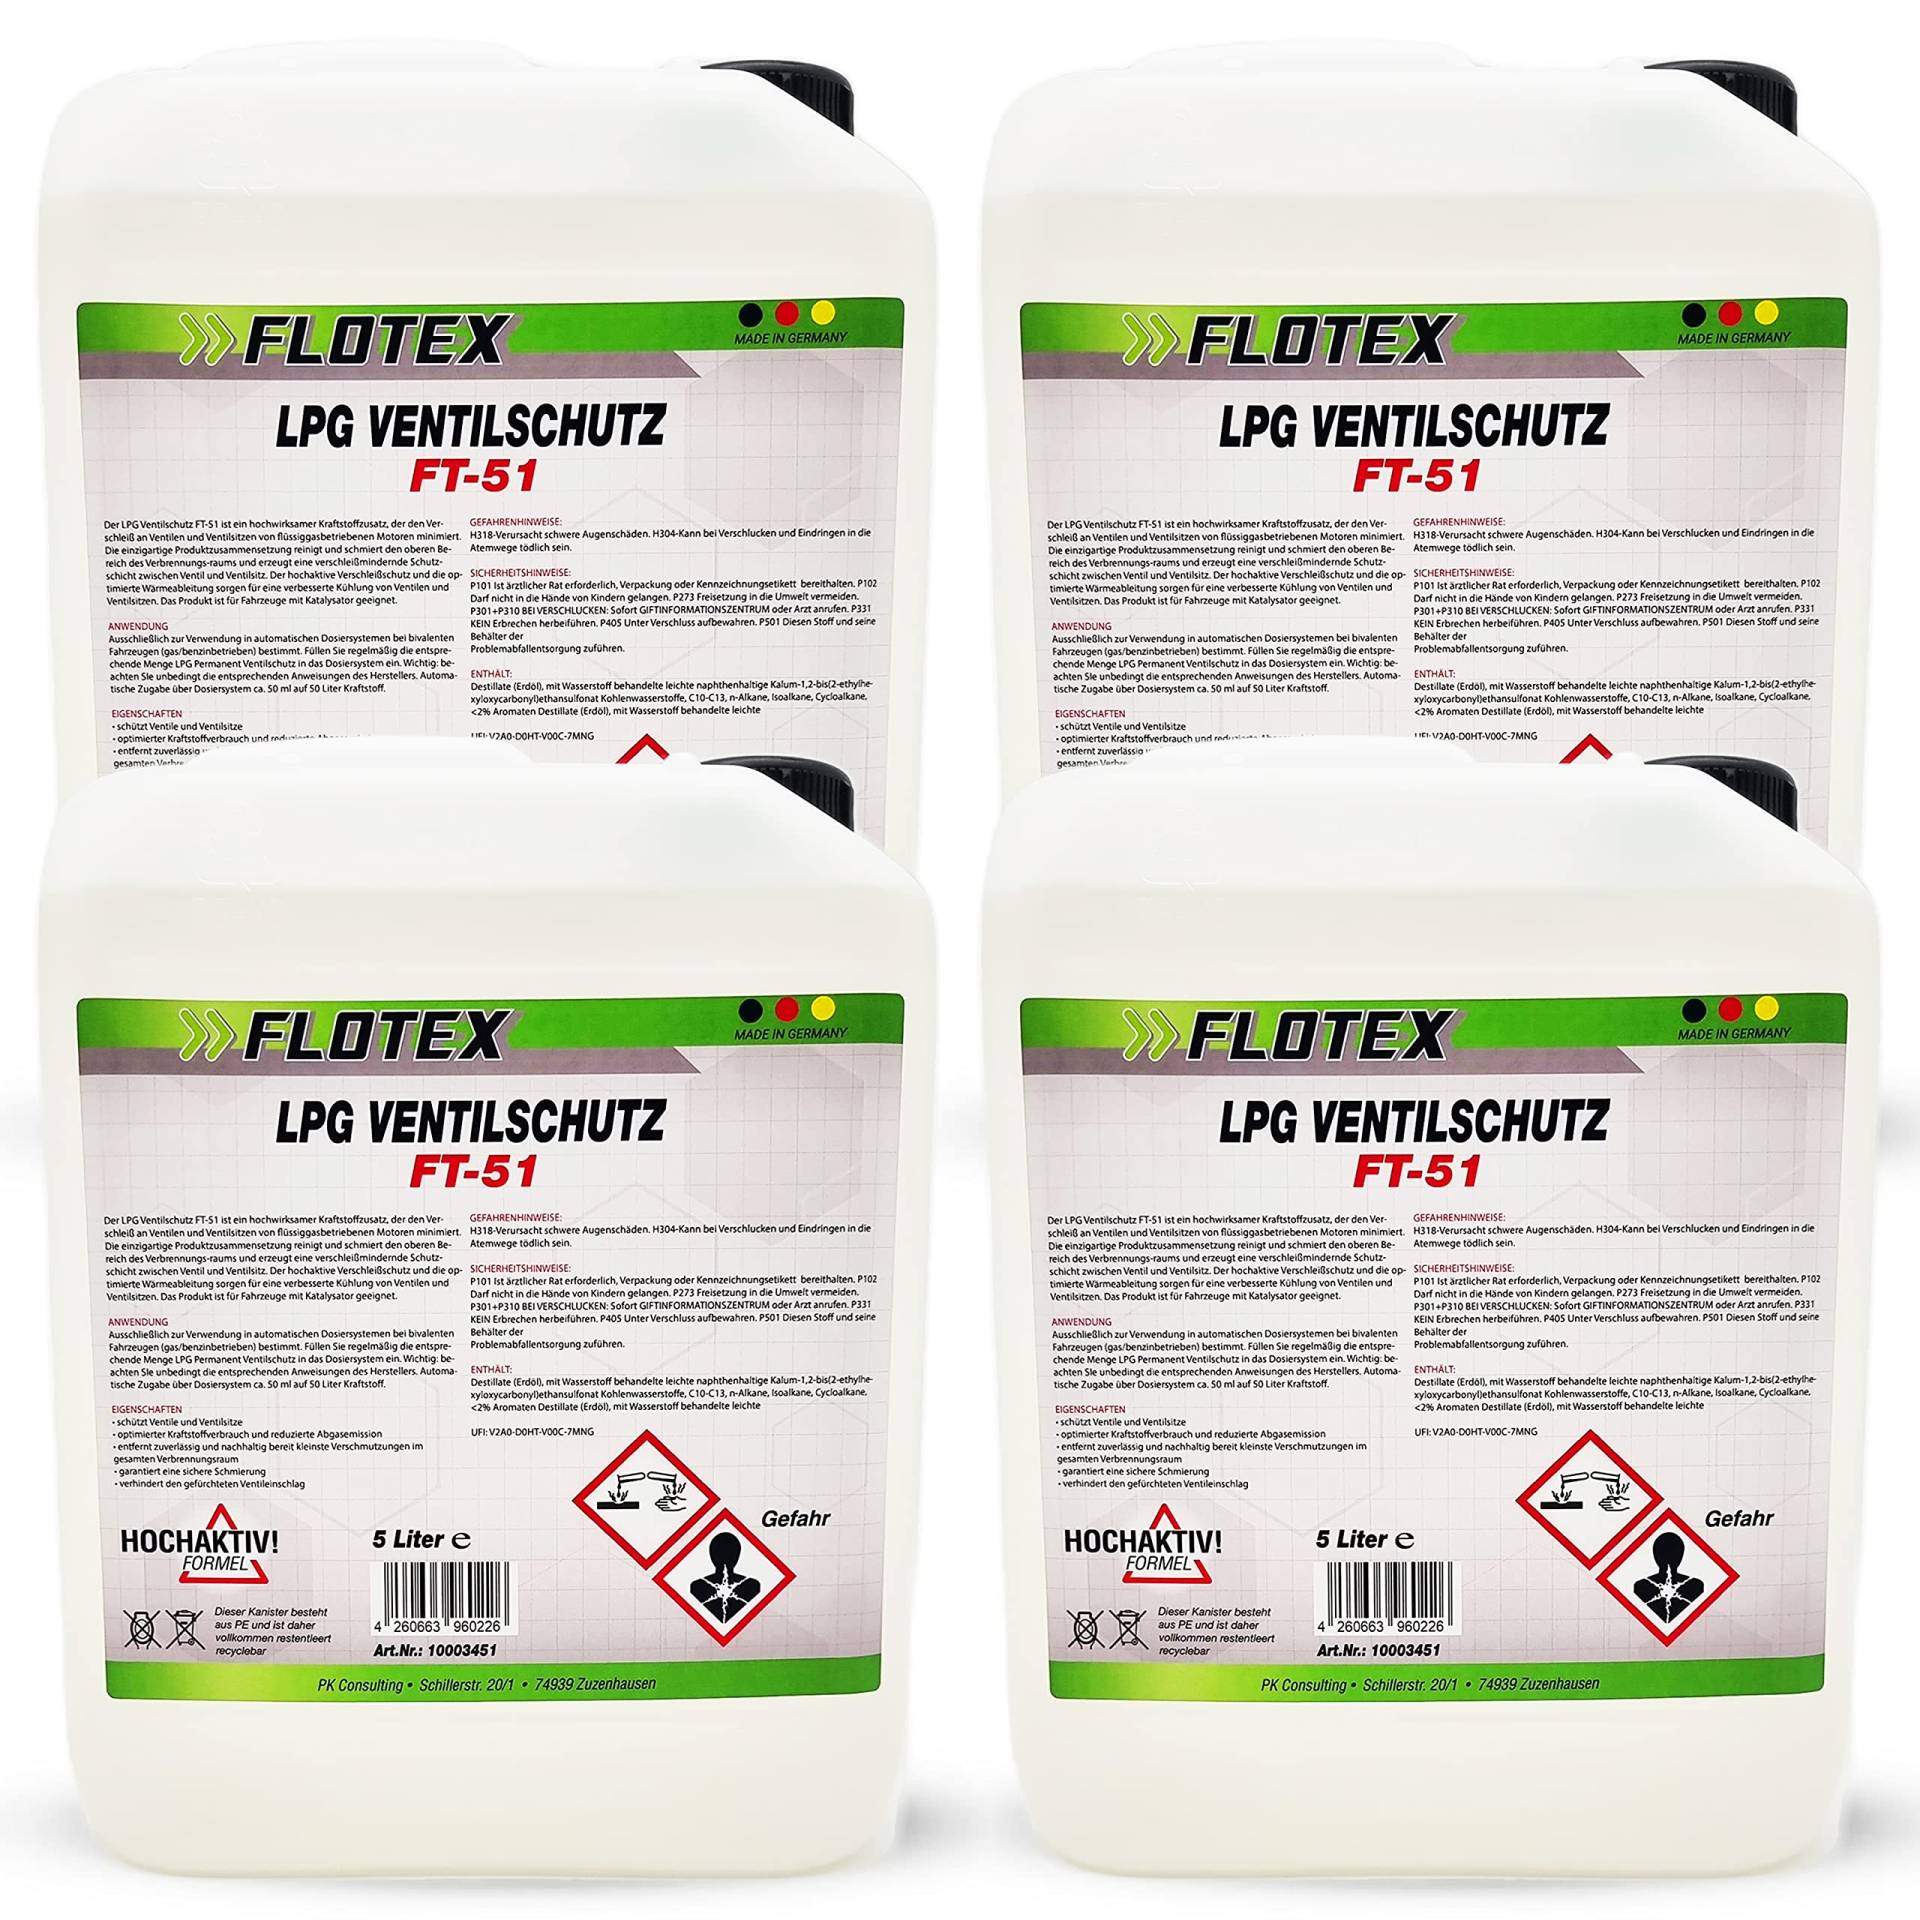 Flotex Permanent LPG Ventilschutz, 4 x 5L Additiv Gas Ventil Schutz von Flotex